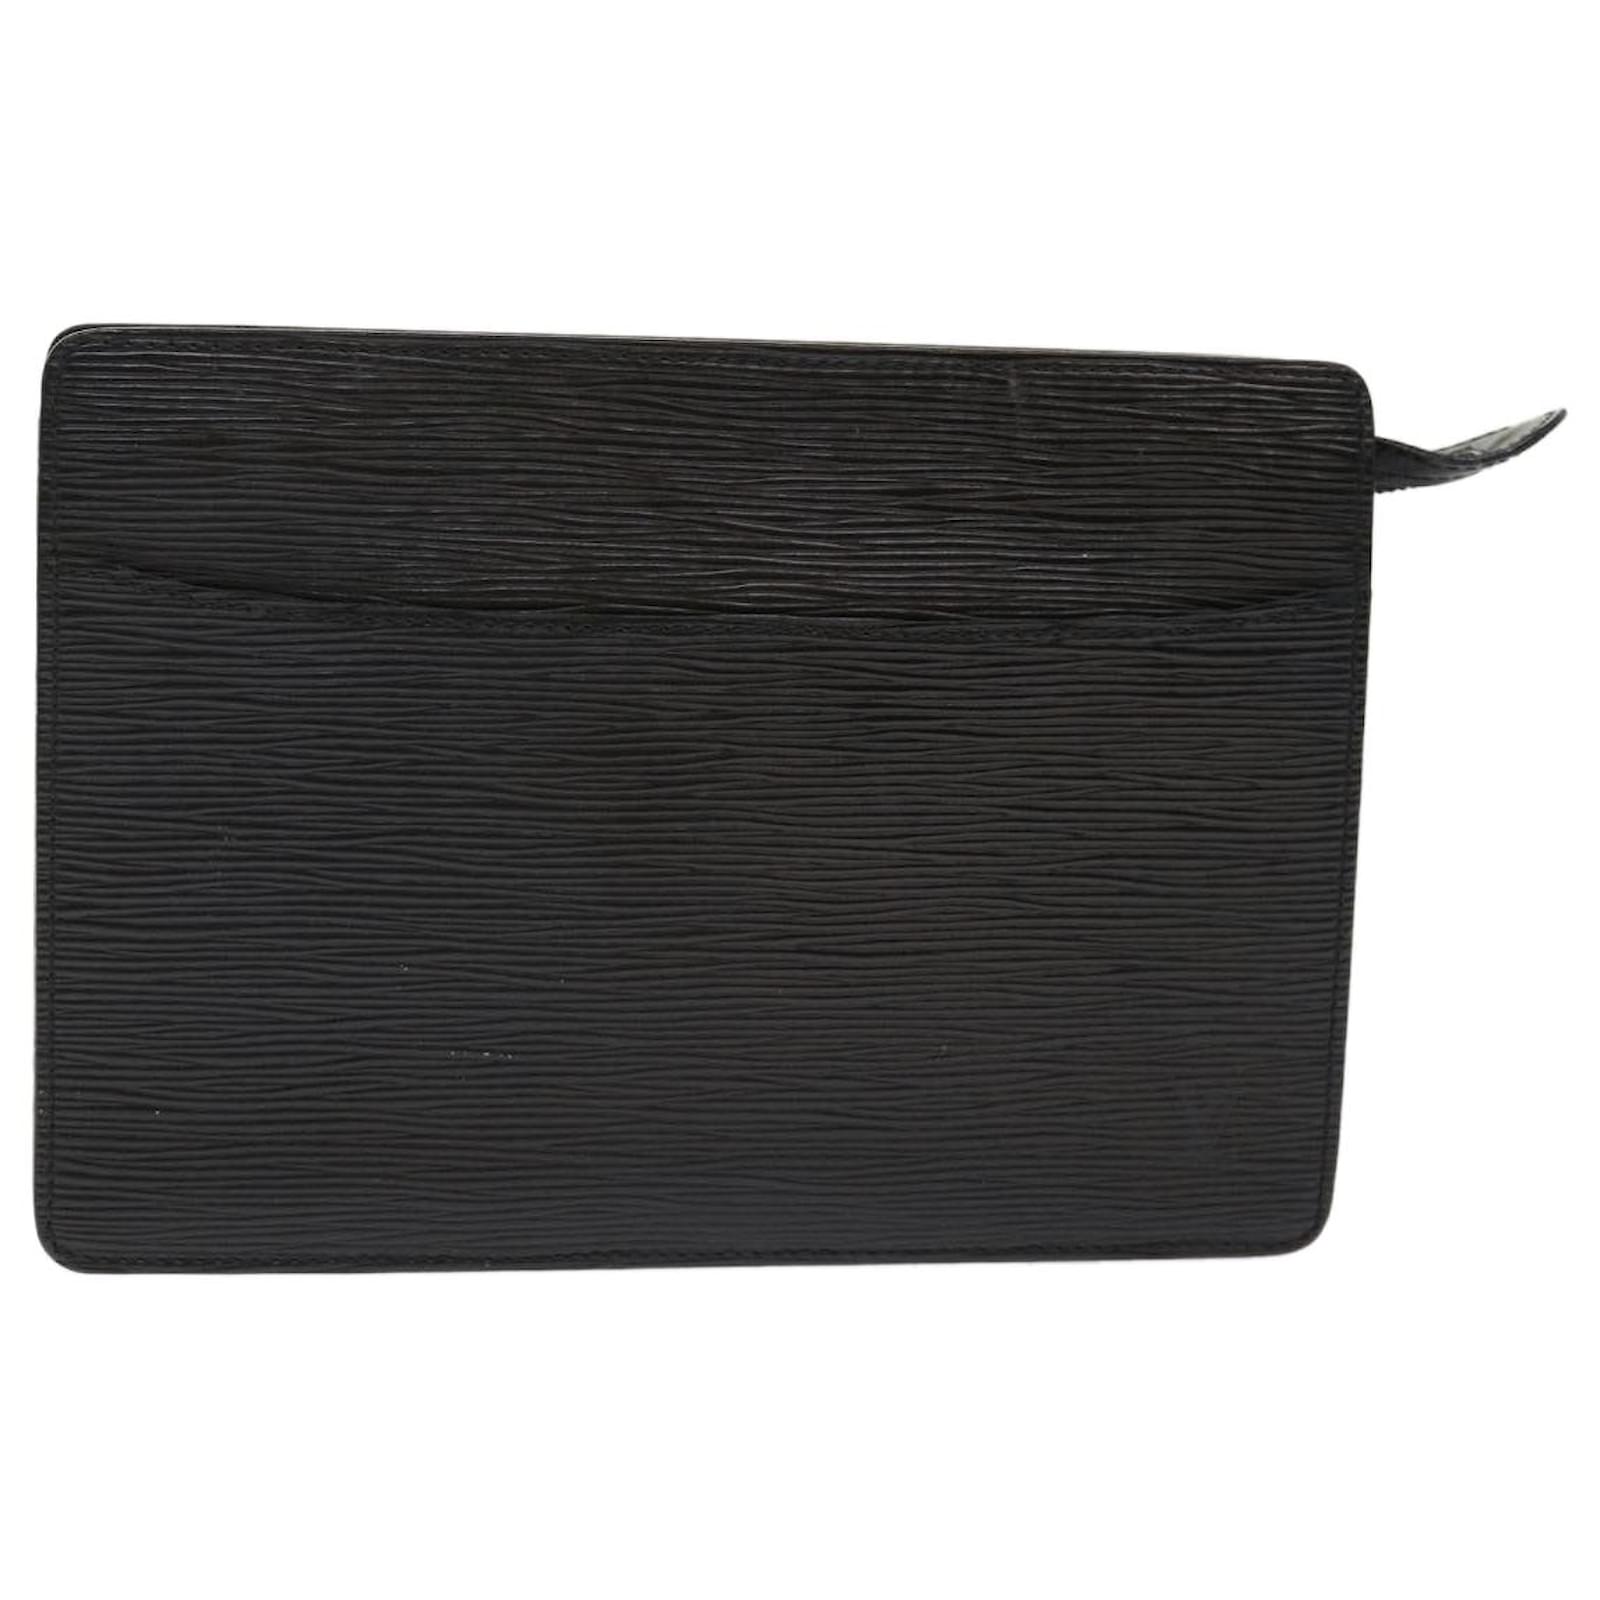 LOUIS VUITTON Montaigne Pochette Epi Leather Clutch Bag Black